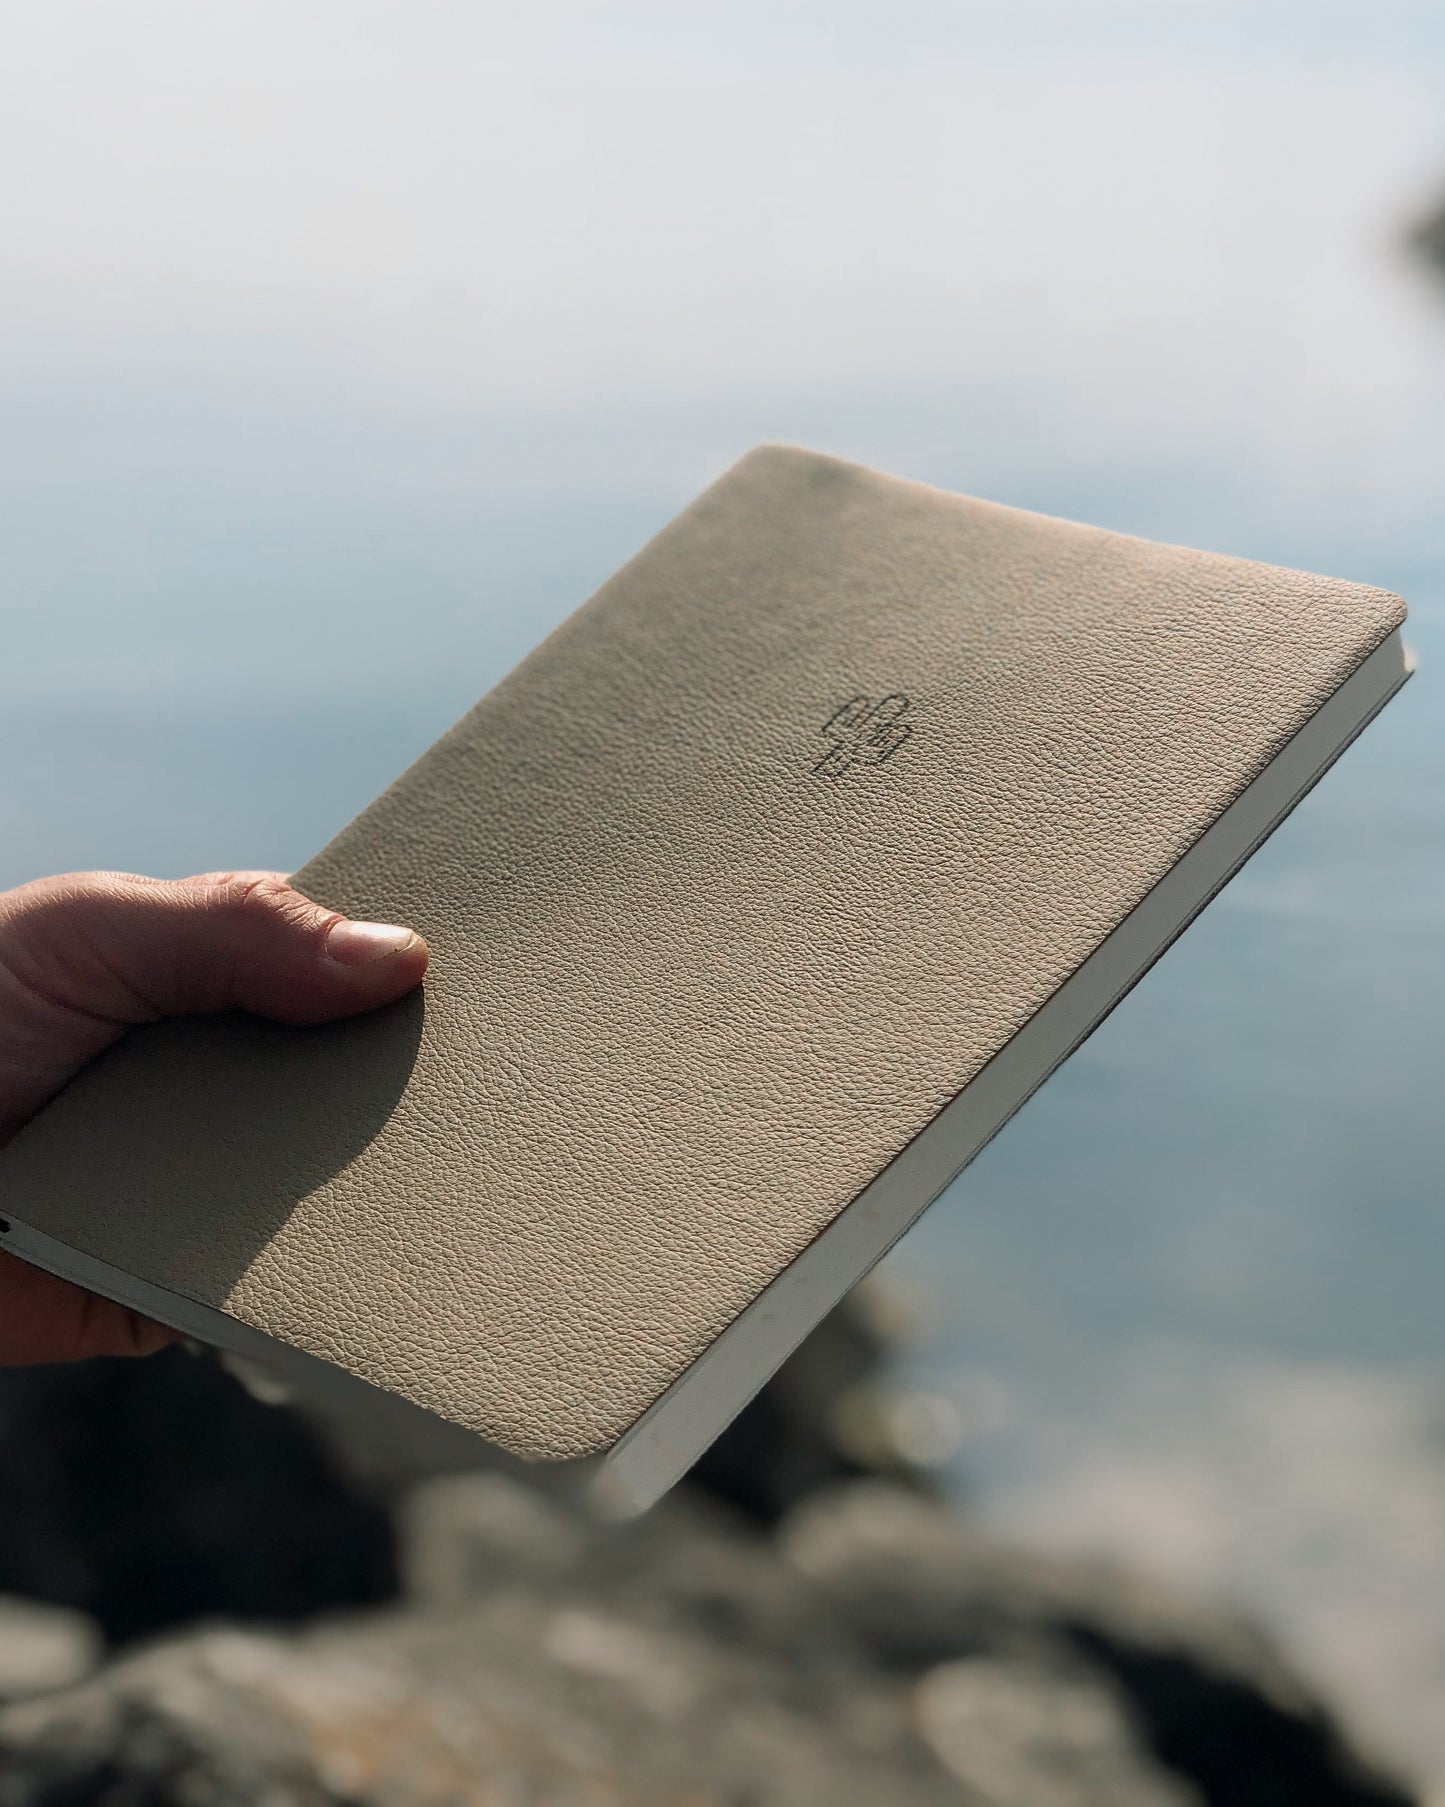 nachhaltiges, edles Notizbuch aus veganem Leder. Das Notizbuch wurde in der Schweiz hergestellt und handgefertigt. Das nachhaltige Notizbuch A5 ist aus Kaktusleder und hat die Farbe beige / braun